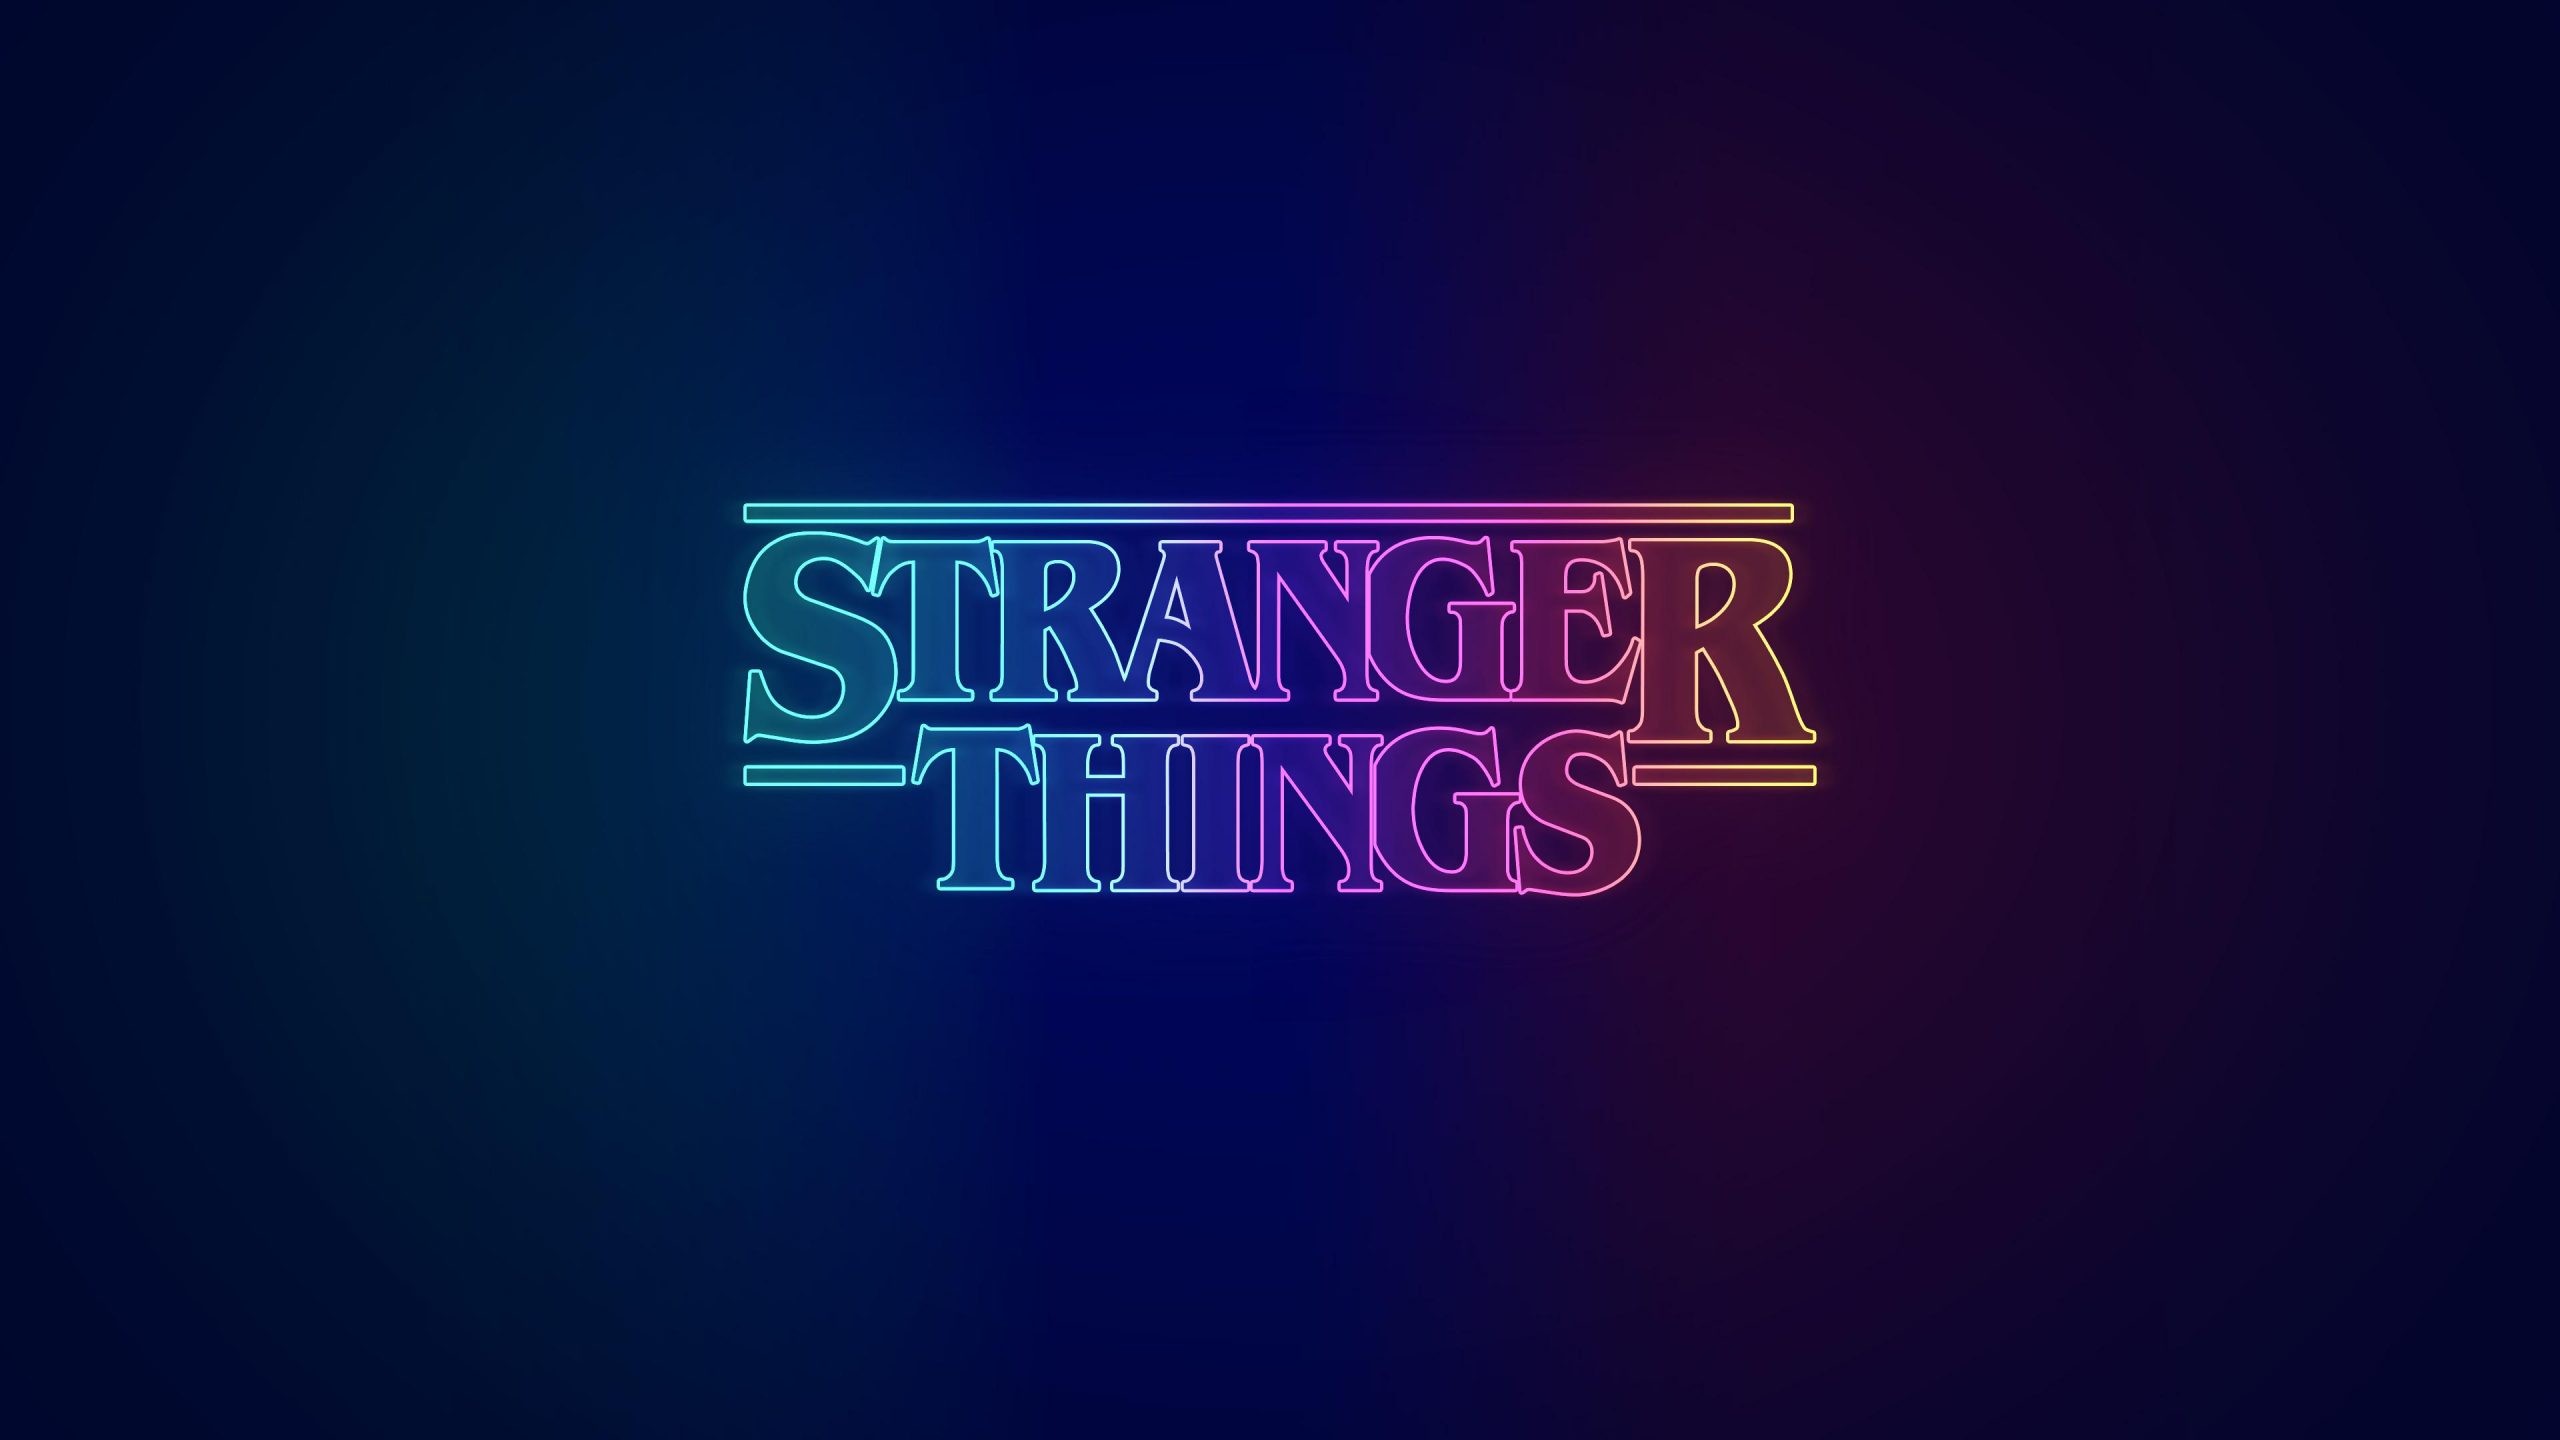 Stranger Things Wallpaper - NawPic